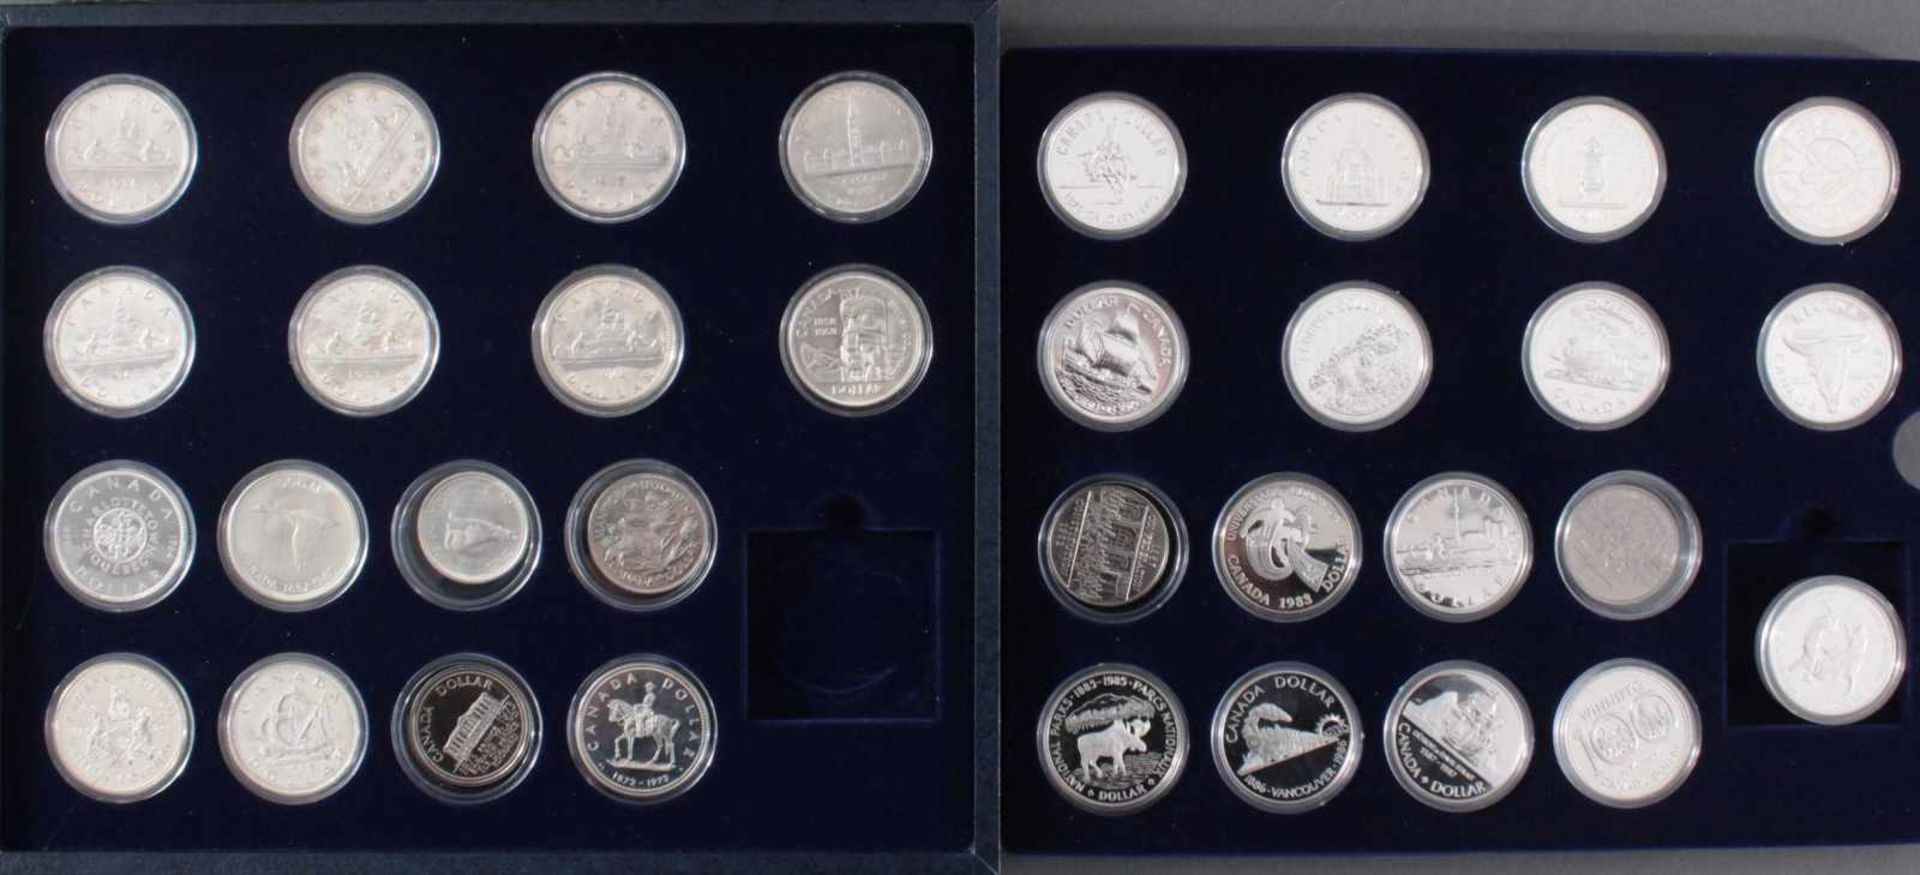 Kanada - Die Offiziellen Silber-Gedenkmünzen33 Stück, alle Polierte Platte und in Münzkapseln